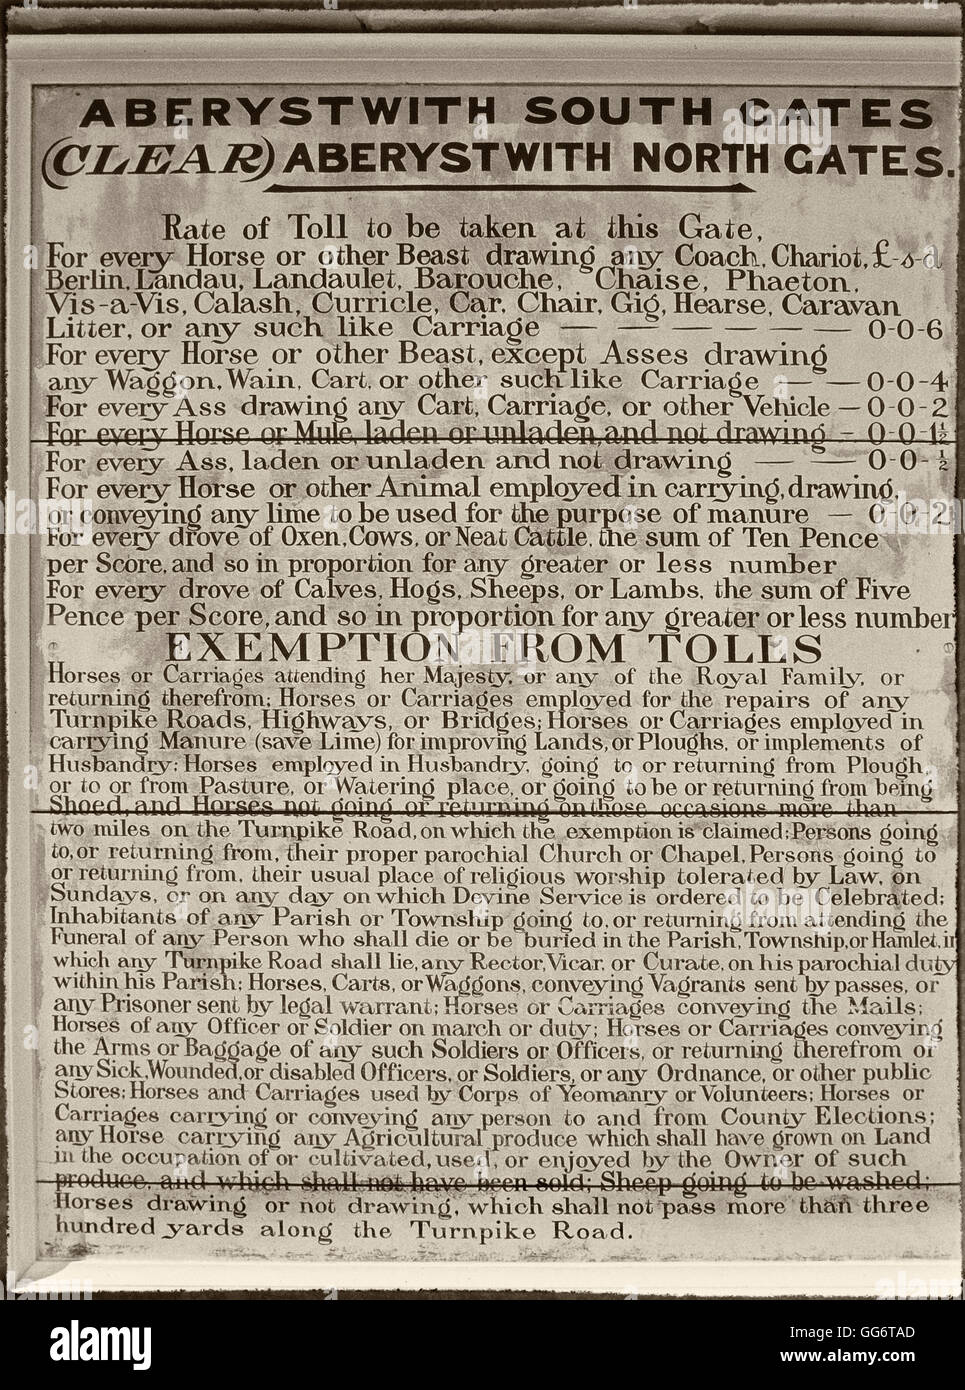 Detaillierte Liste der Mautgebühren auf der Seite des Aberystwith Toll House, National History Museum, St Ffagans, Cardiff, Wales, Cymru, Großbritannien Stockfoto